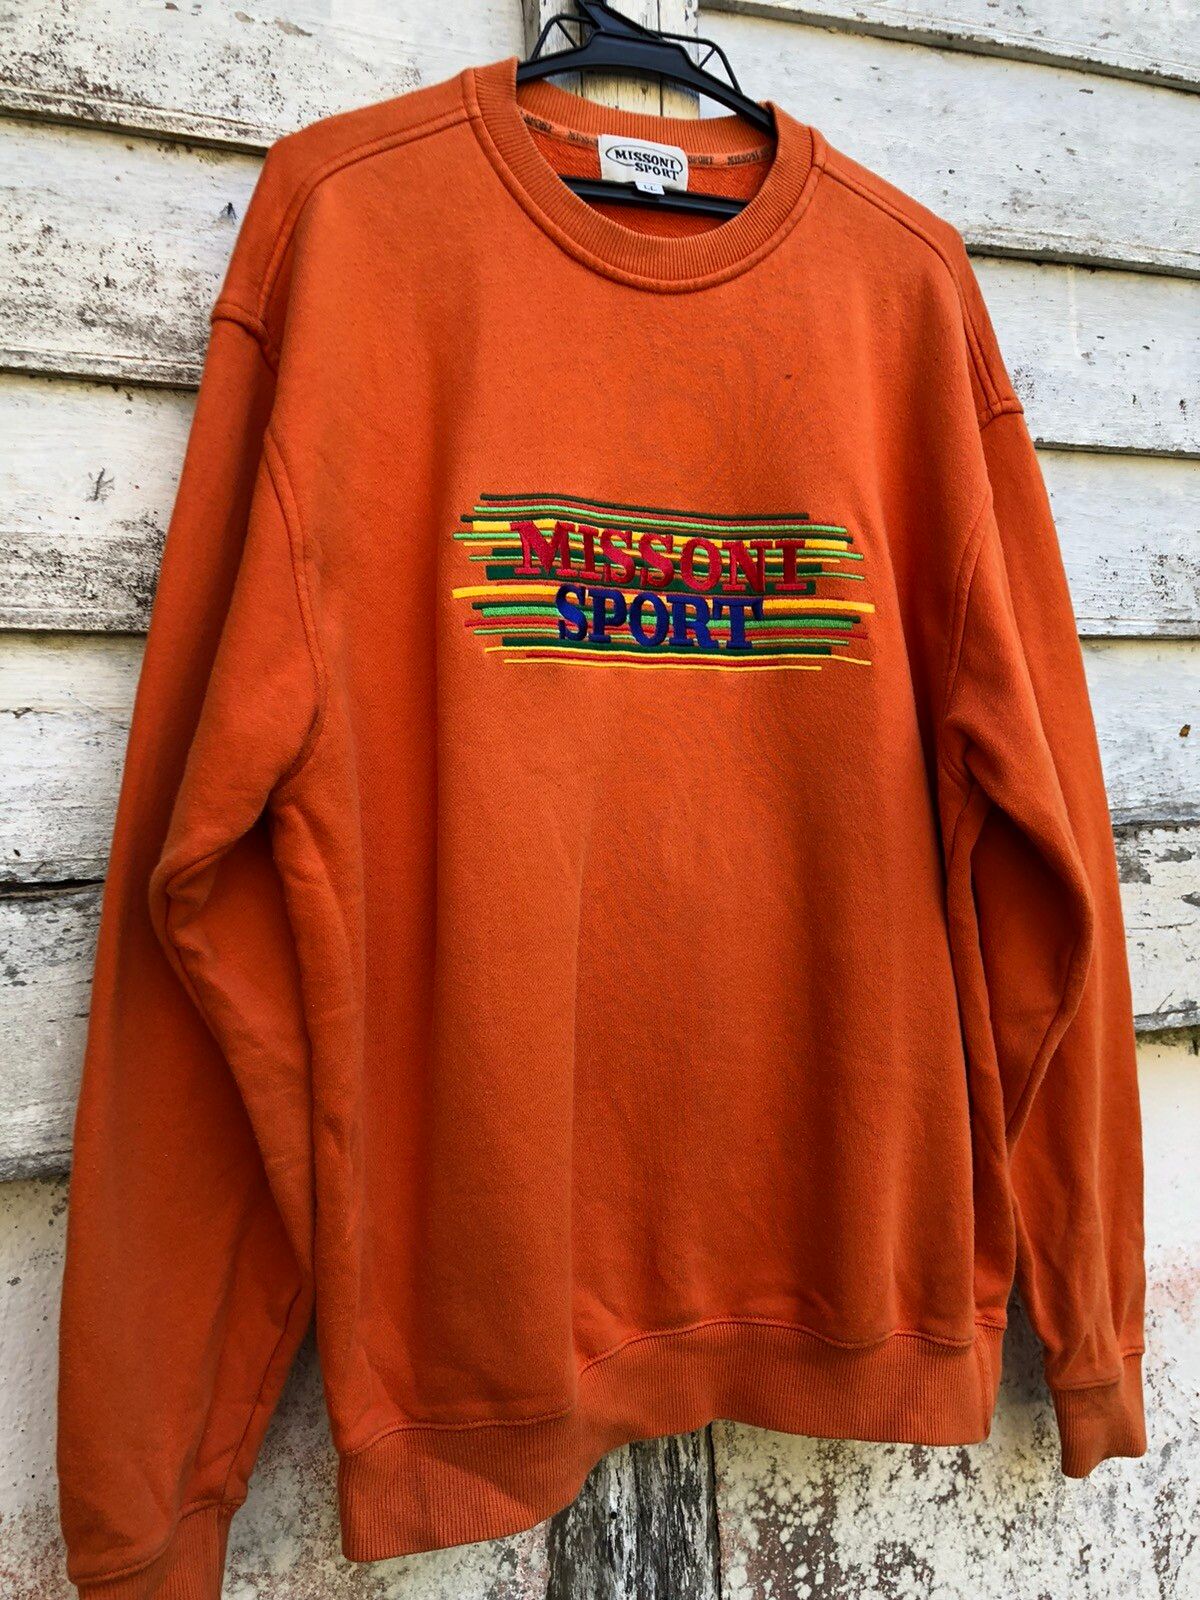 Vintage Missoni Sport Sweatshirt - 3